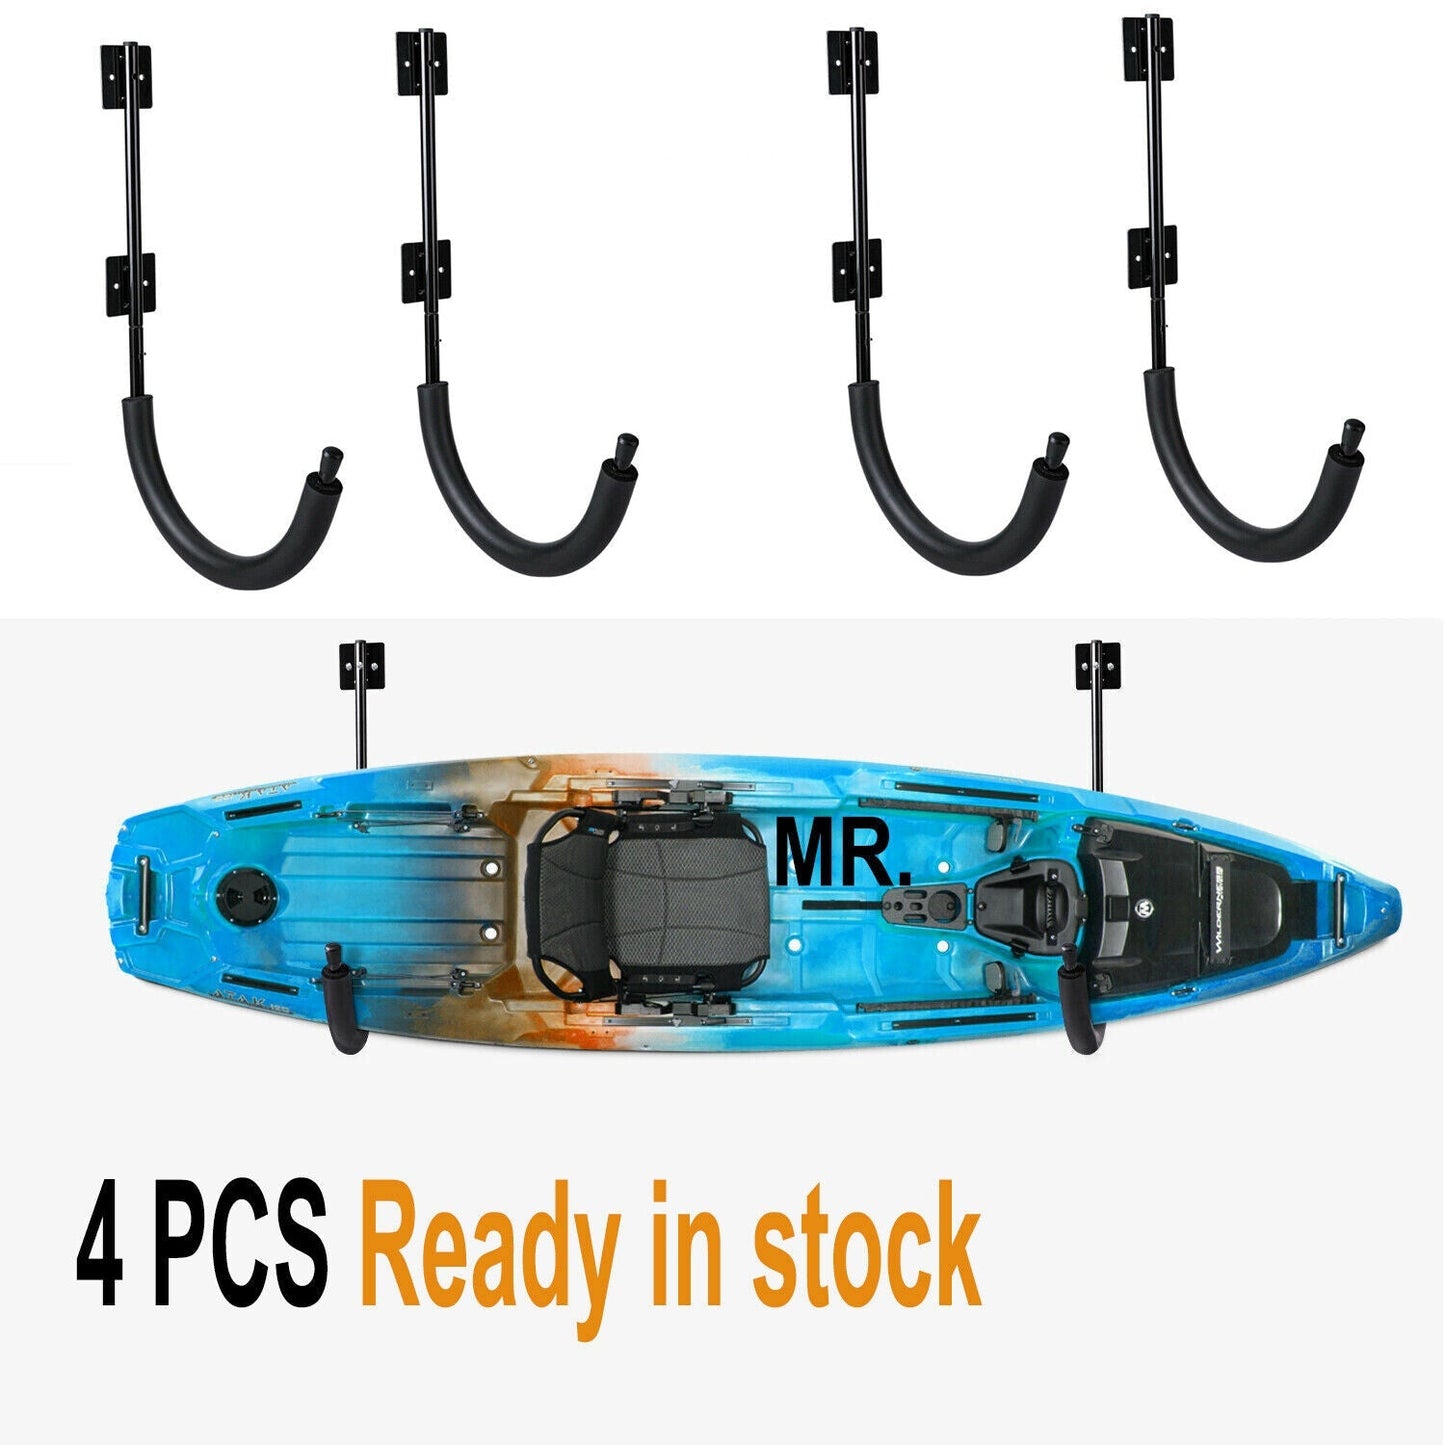 4 PCS Kayak Storage Wall Mount Hanger Rack for Canoe Paddle Kayak Hanging Hook by Plugsus Home Furniture